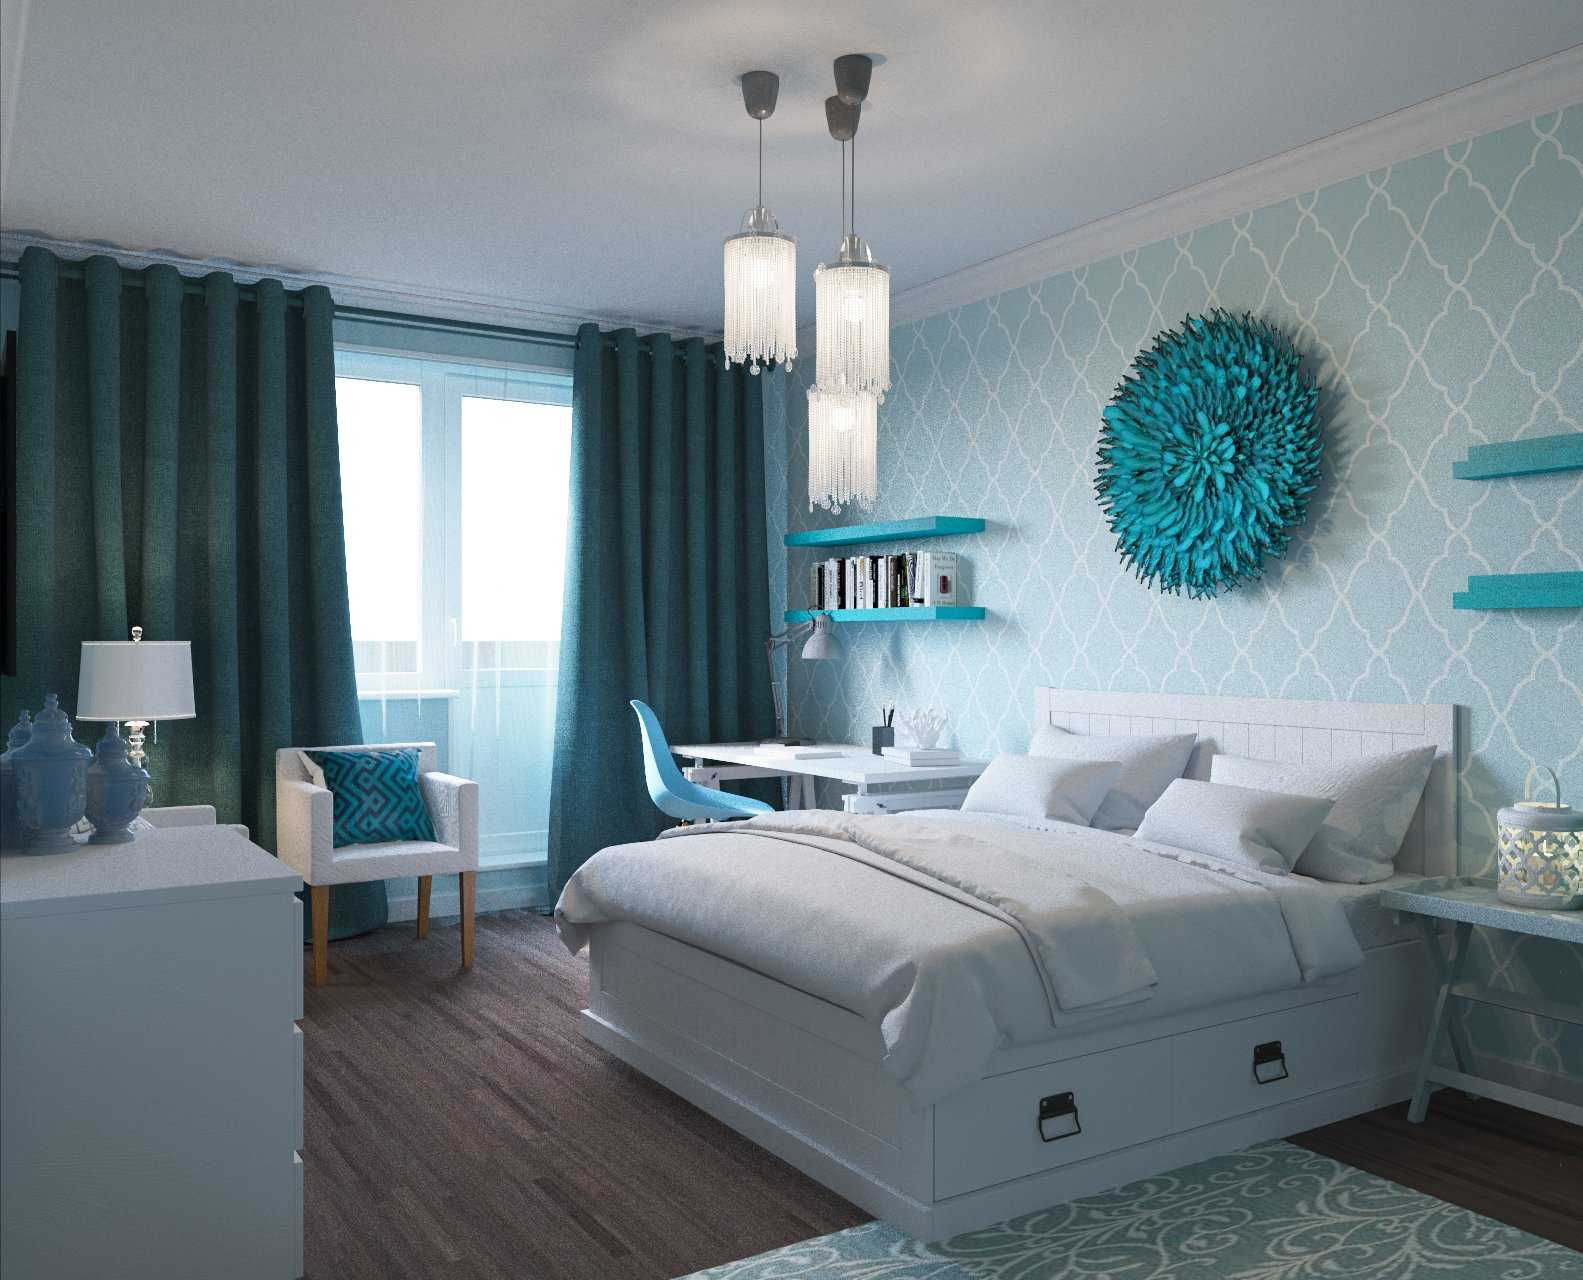 Спальня в бирюзовых тонах, варианты дизайна интерьера, возможные сочетания цветов + фото